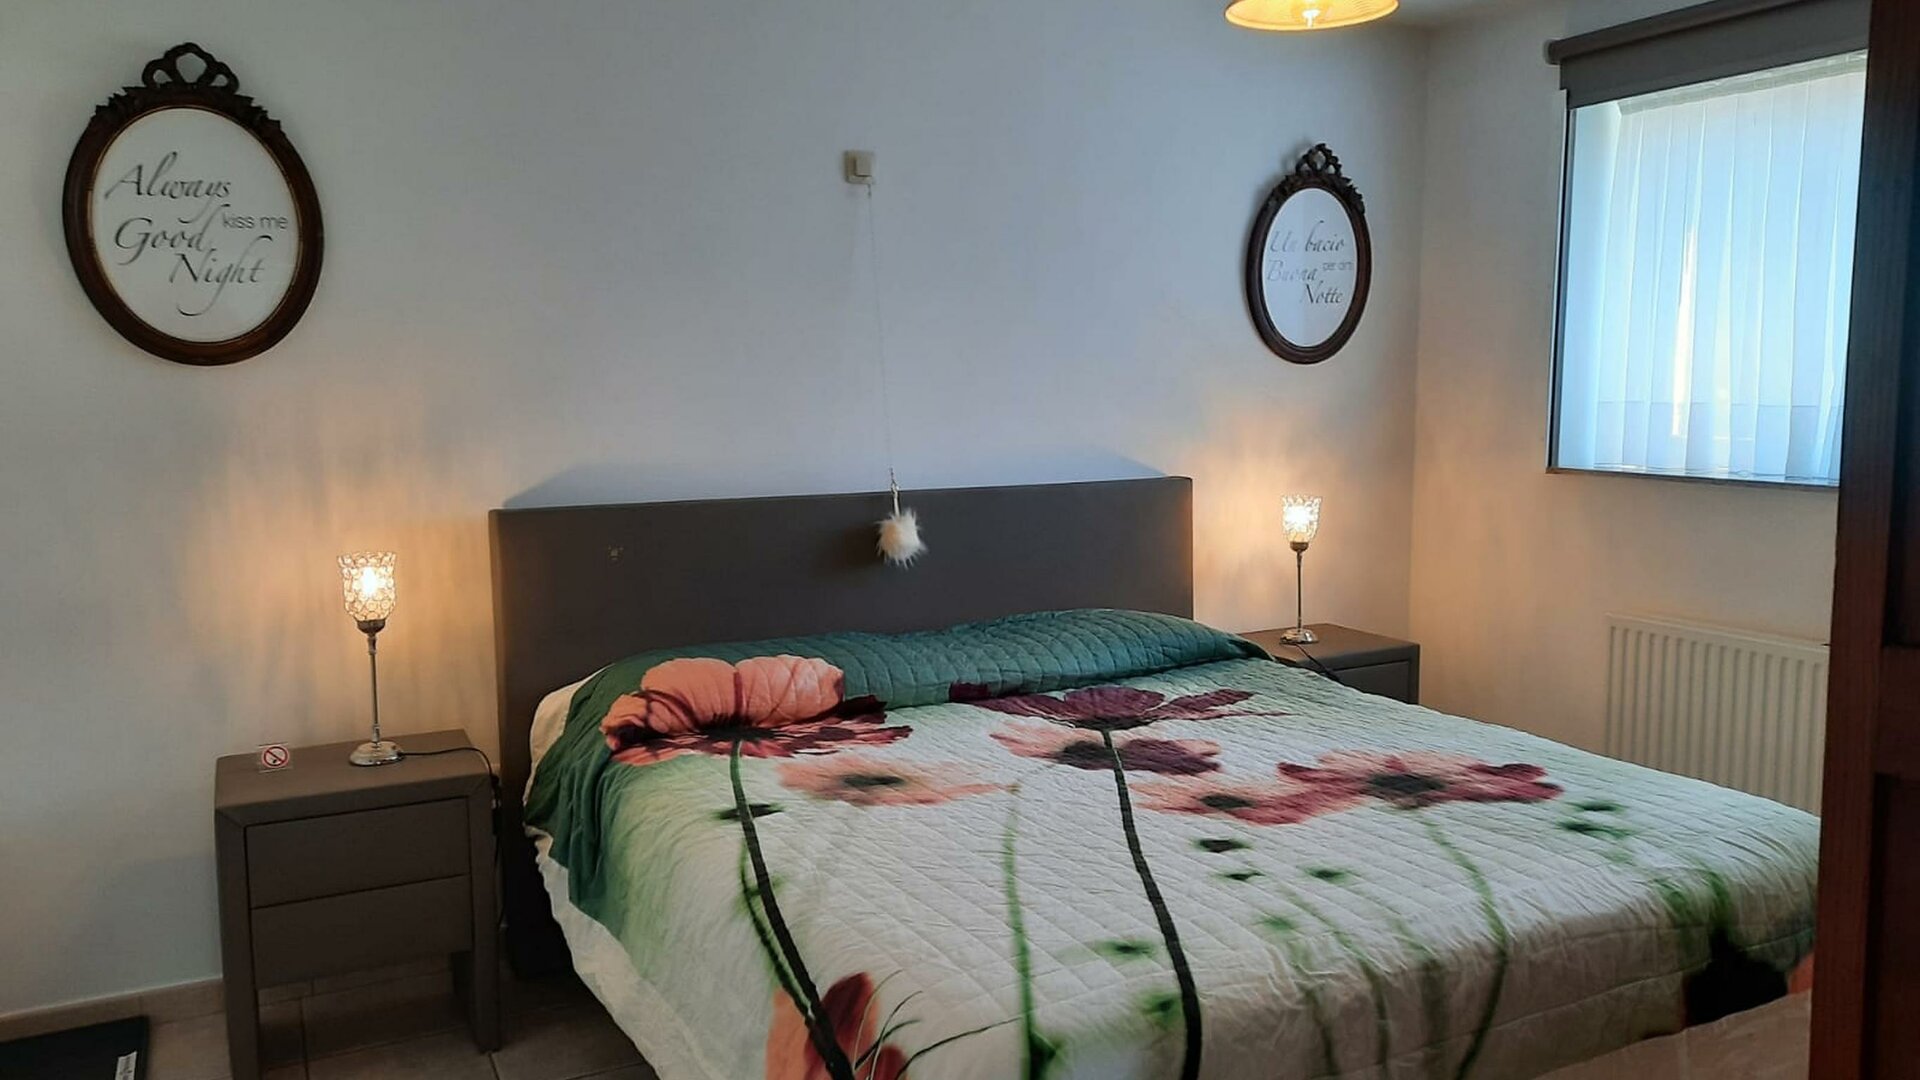 Casa Roman Deluxe Vakantiewoning - 2 slaapkamers -  De Luxe Stenenenkruisweg 50A /4 pers. - 2 slaapkamers met terras - 1ste verdiep